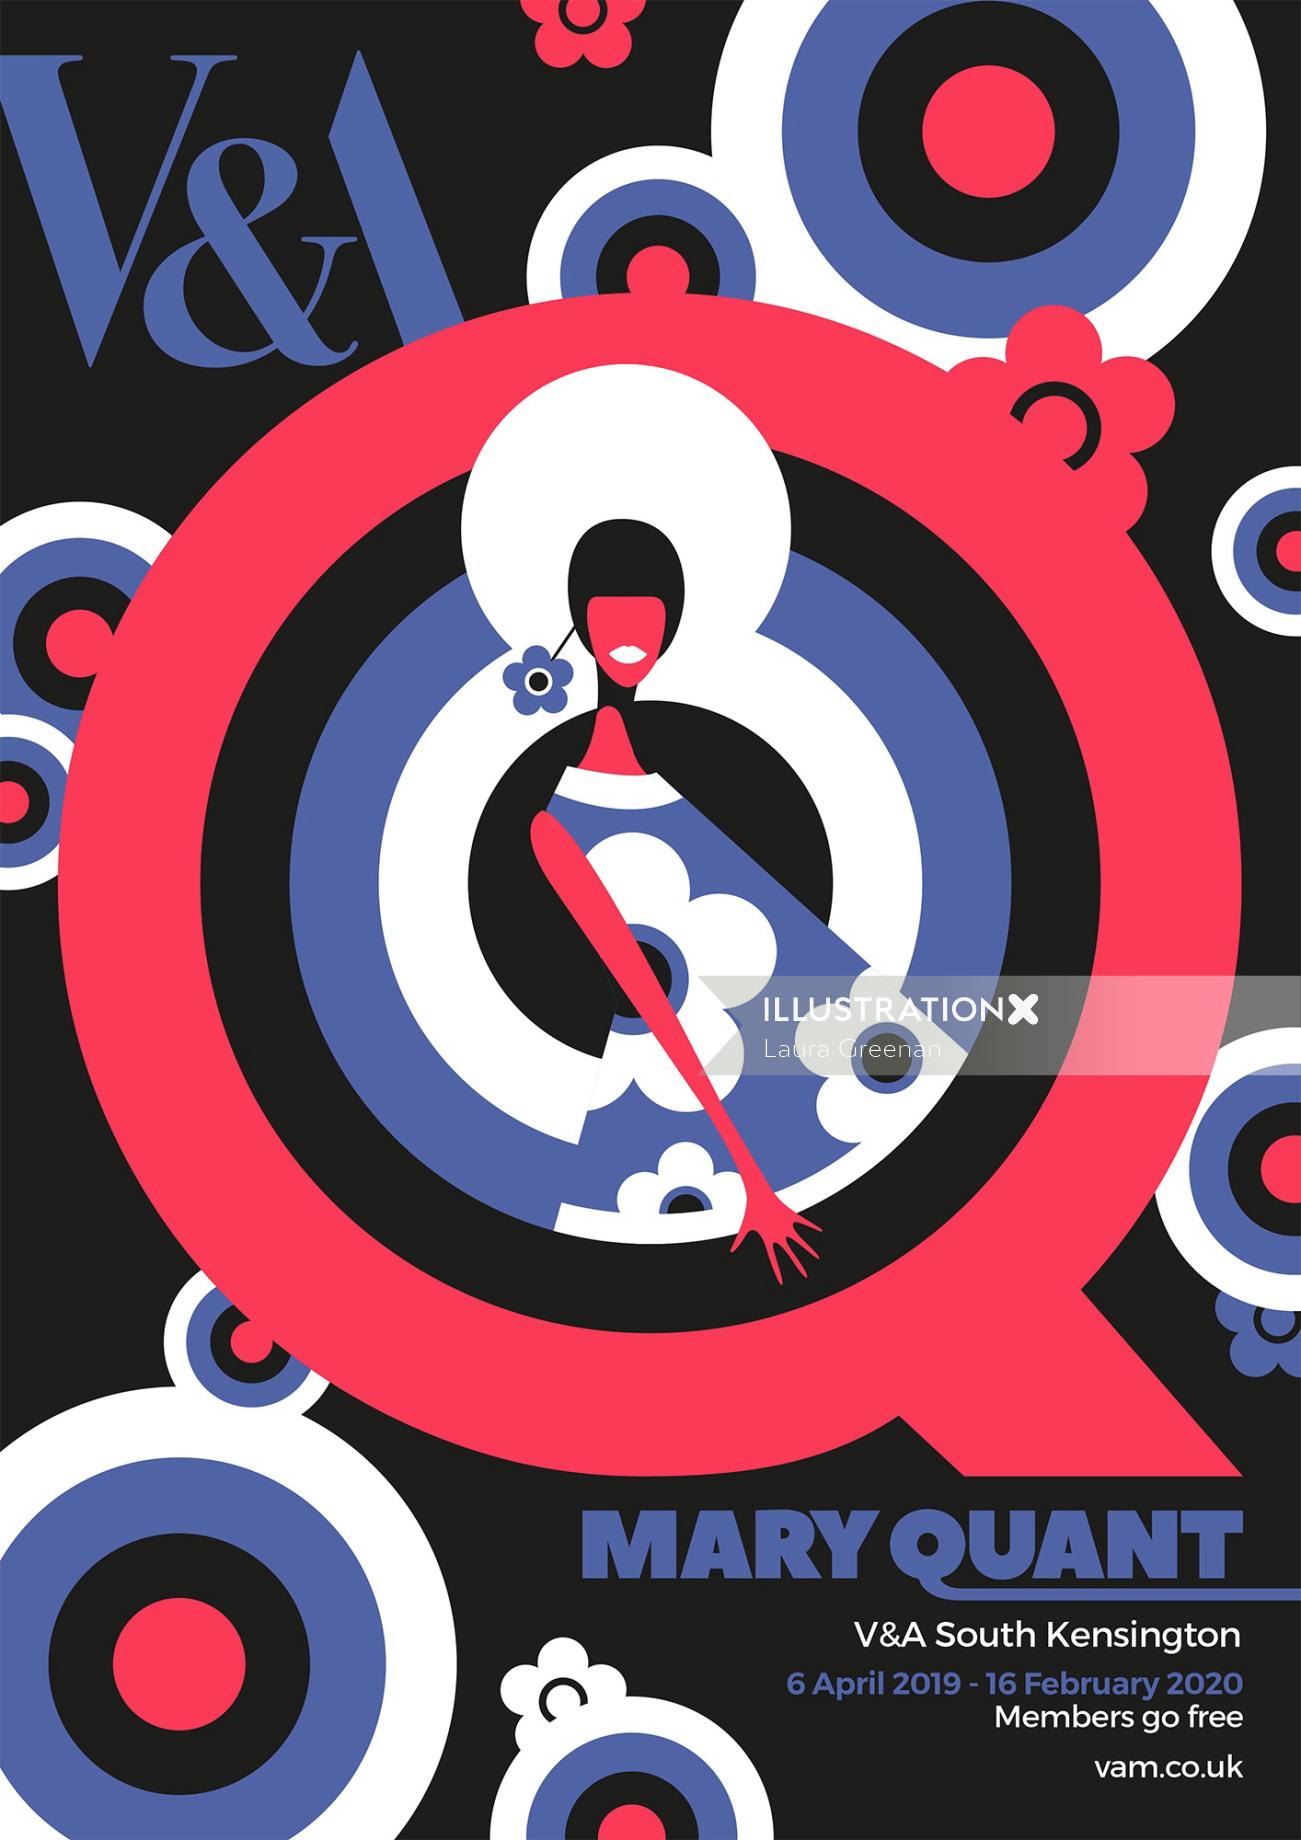 60年代のファッションデザイナー、メアリー・クォントの展覧会のポスターデザイン。